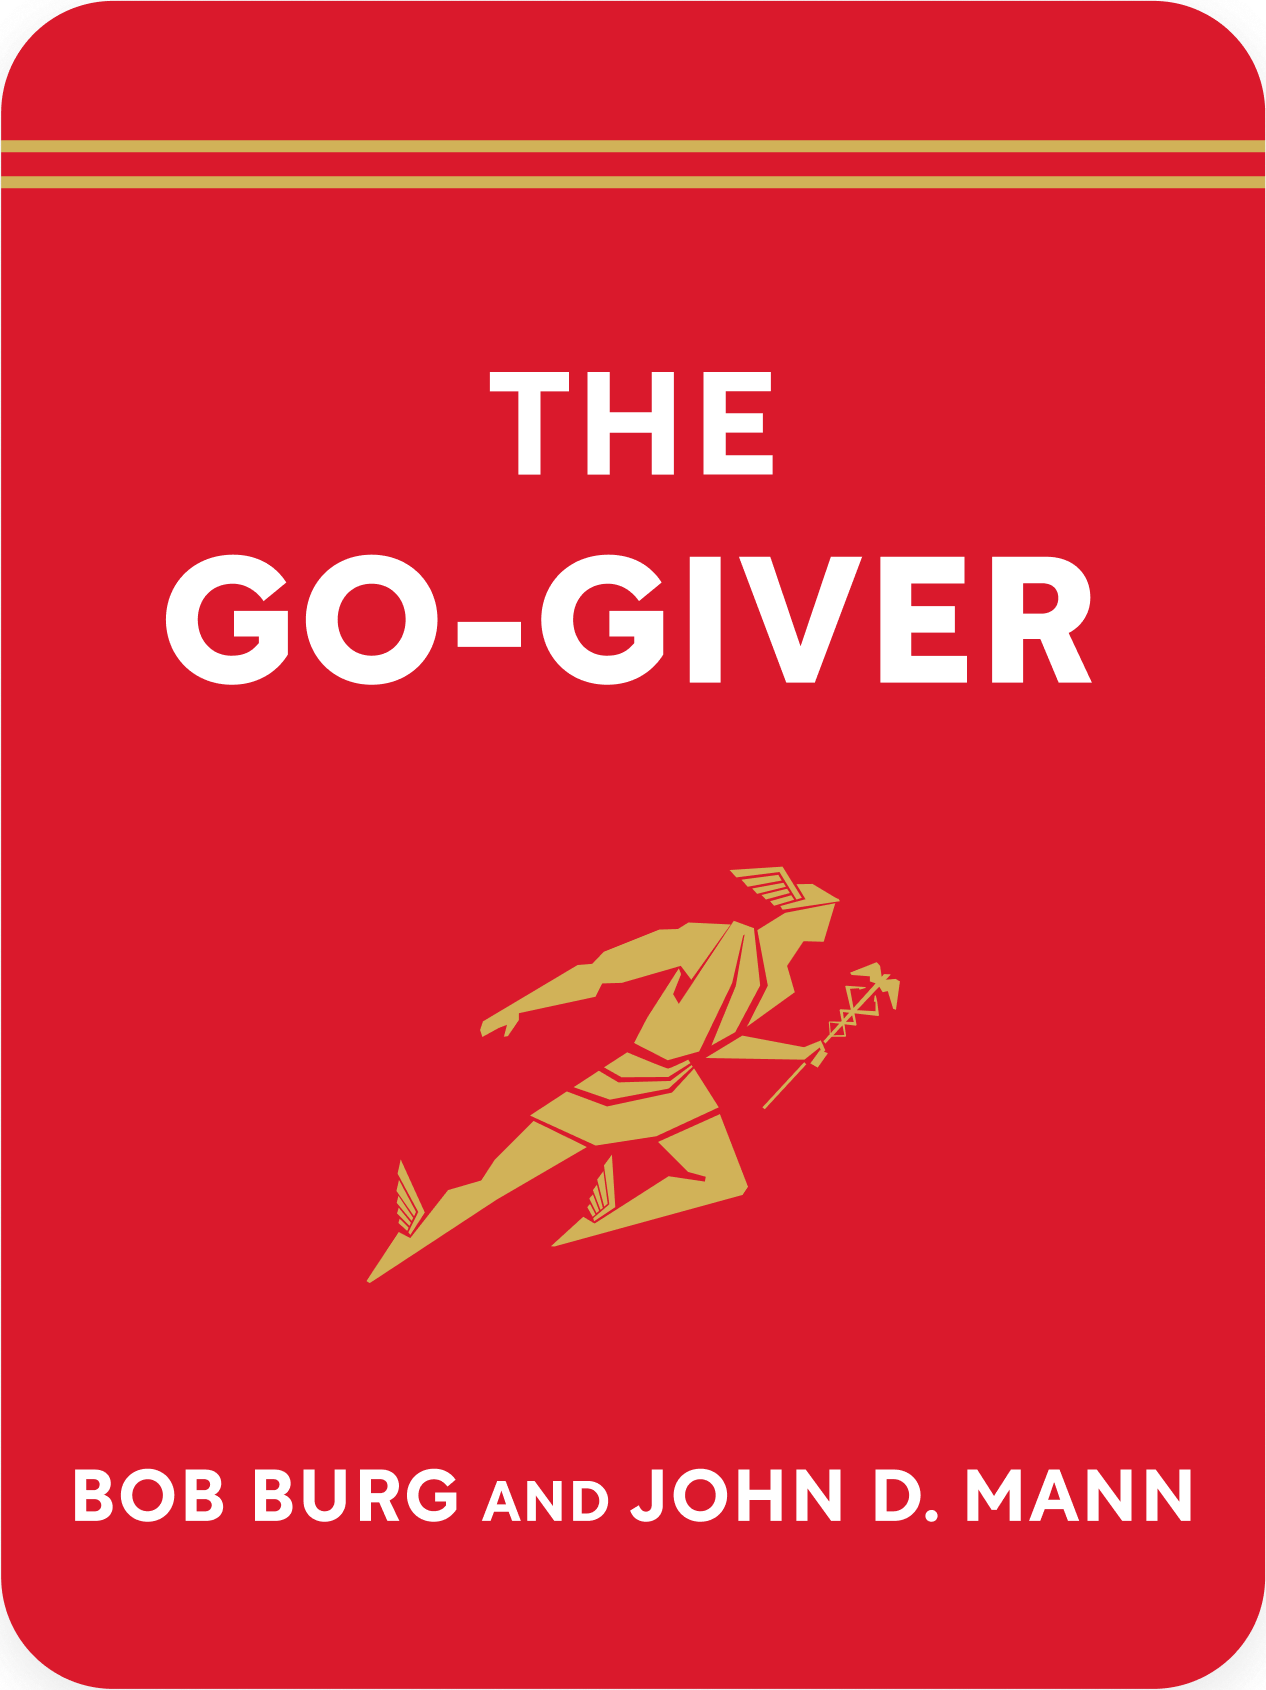 The Go-Giver Book Summary by Bob Burg and John D. Mann